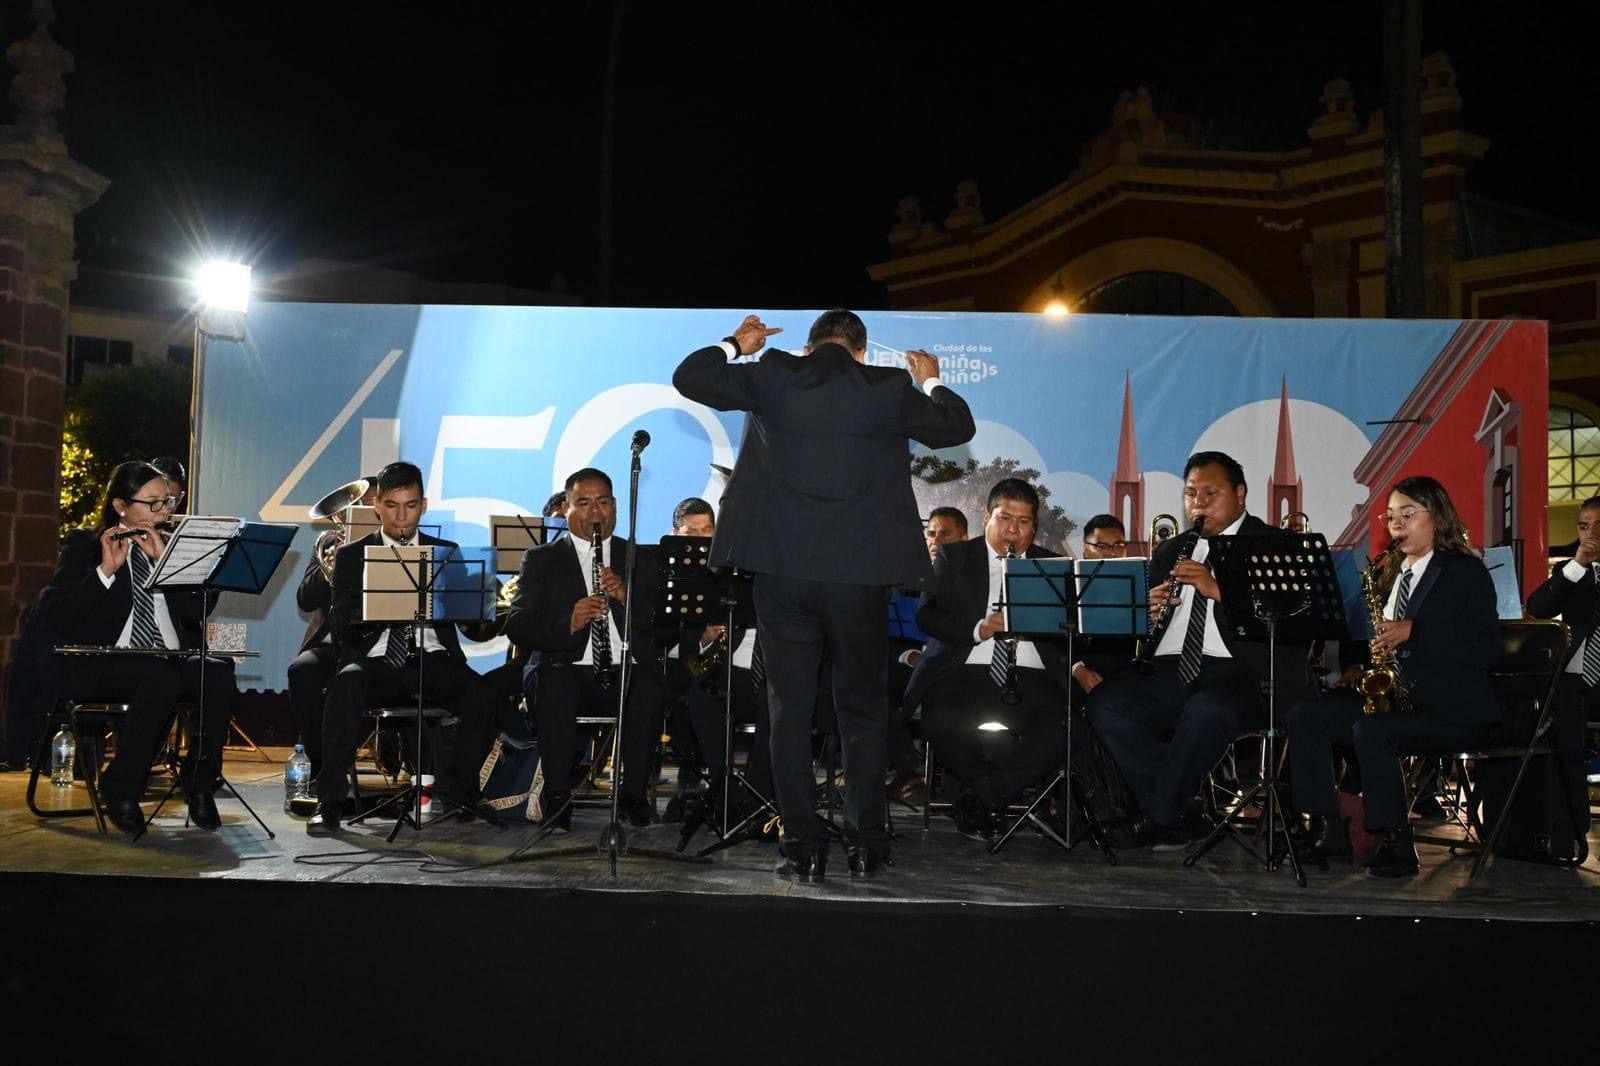 Gran presentación de Banda Sinfónica de la Secretaría de Seguridad Pública del Estado de Michoacán por el 450 Aniversario de la Fundación de Zamora.